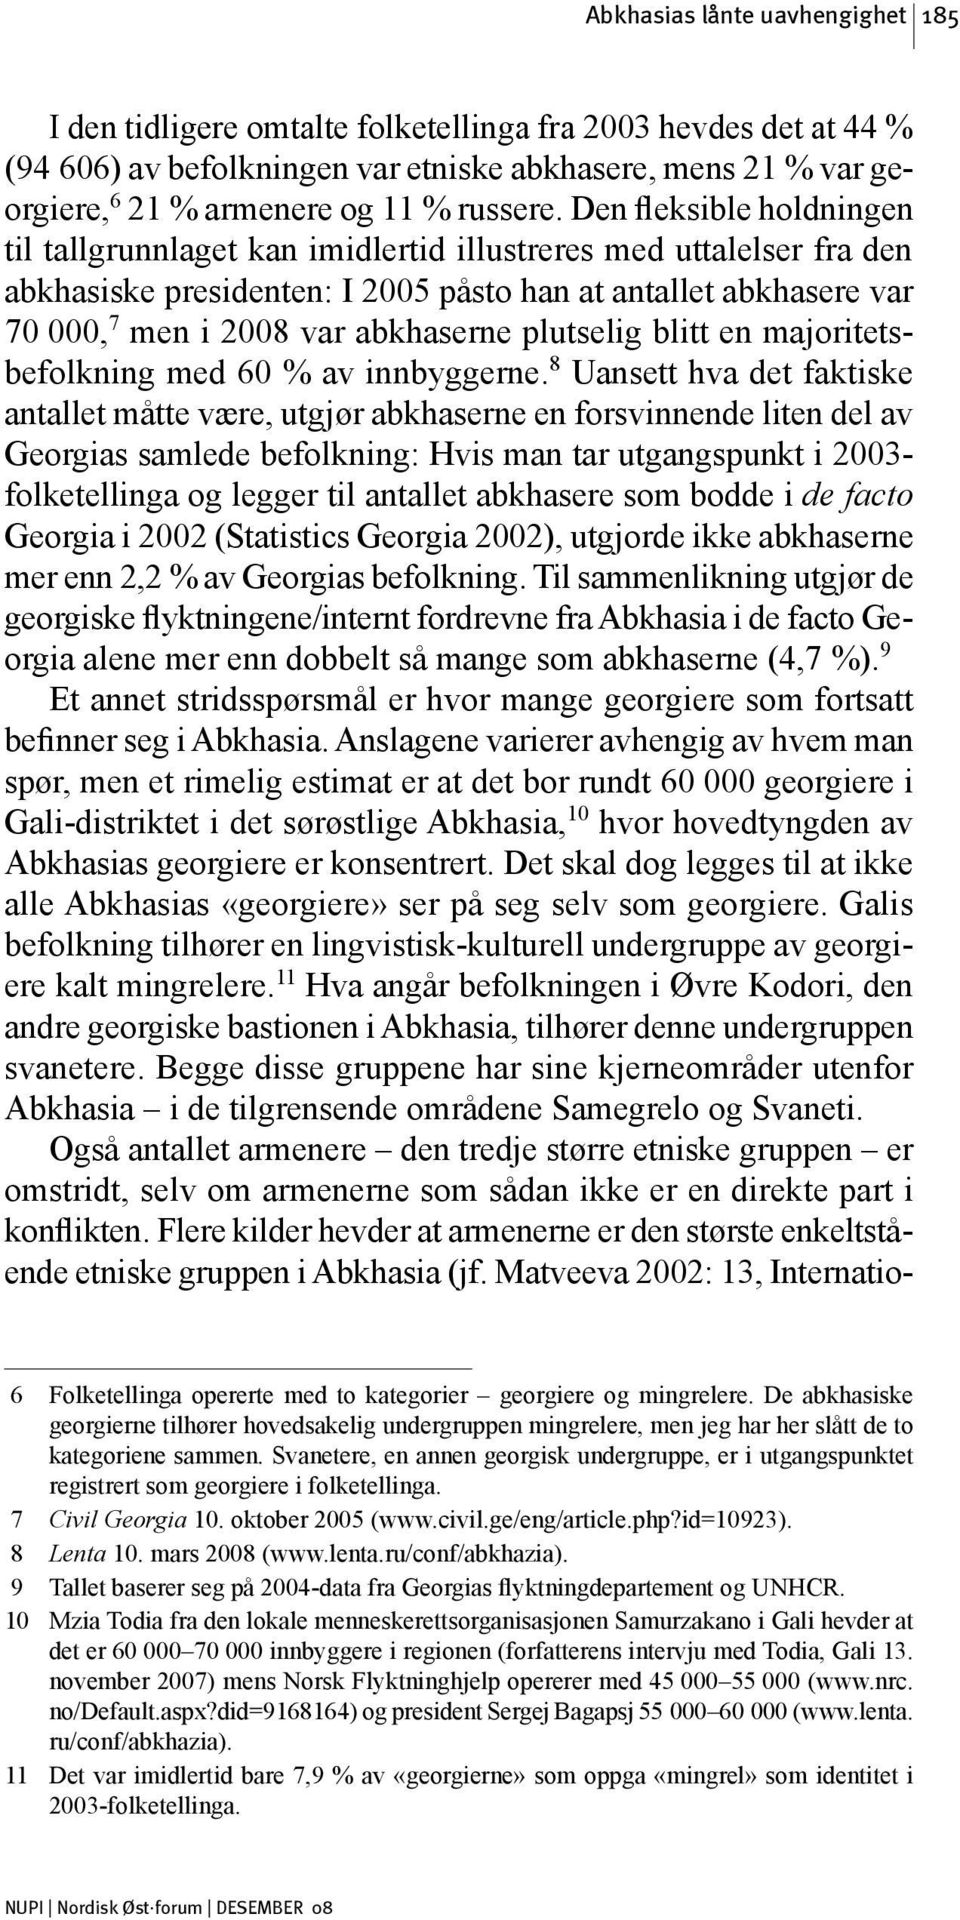 Den fleksible holdningen til tallgrunnlaget kan imidlertid illustreres med uttalelser fra den abkhasiske presidenten: I 2005 påsto han at antallet abkhasere var 70 000, 7 men i 2008 var abkhaserne